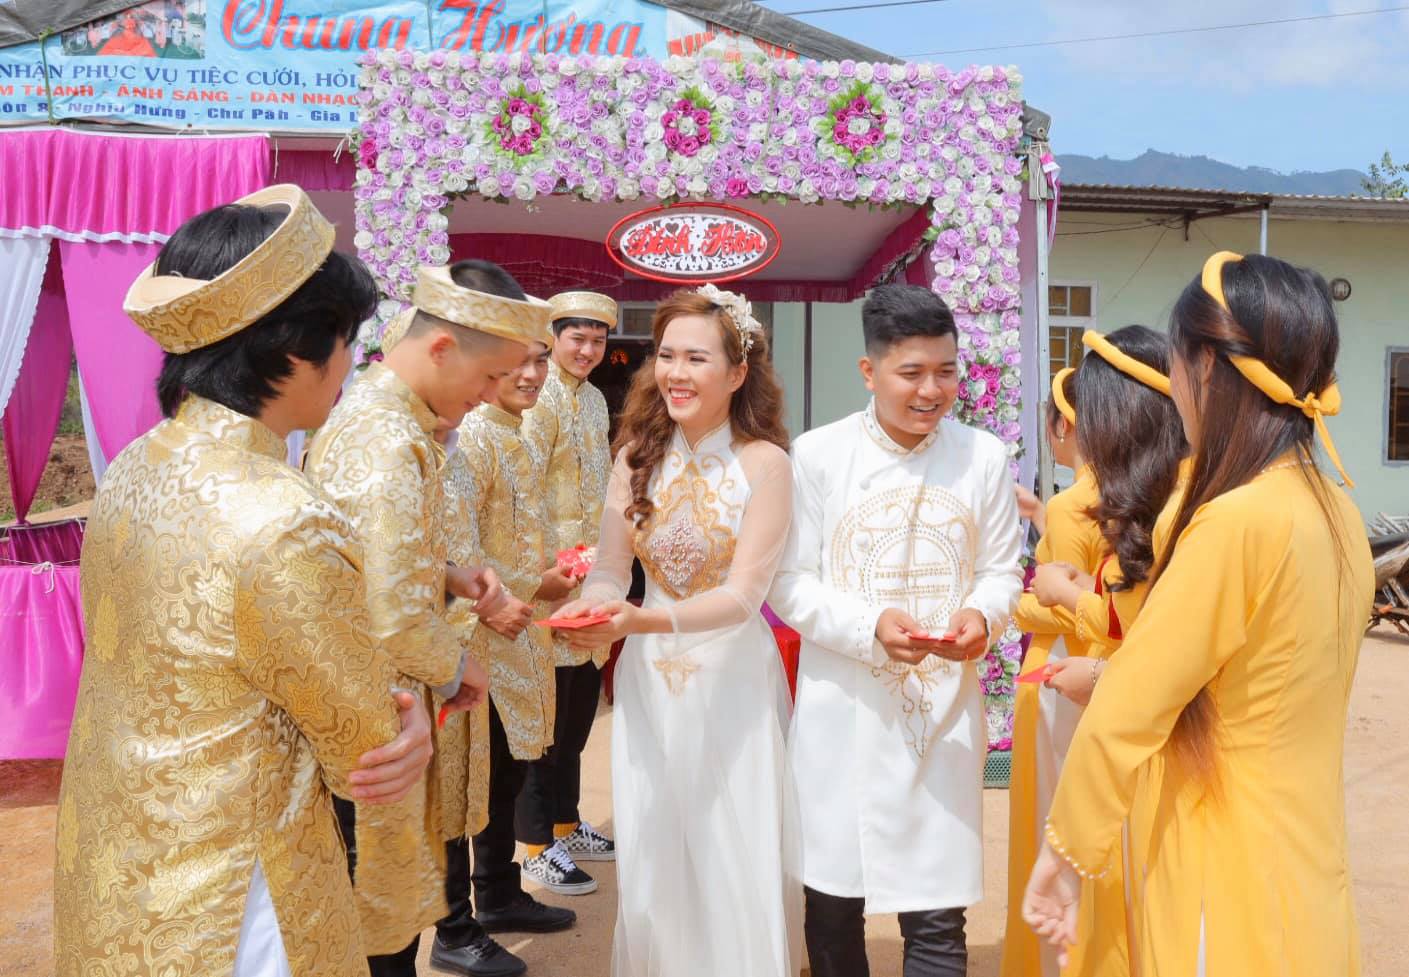 Đám cưới đẹp tại các tỉnh miền tây nước ta - Ảnh cưới đẹp, ảnh gia đình, ảnh  nghệ thuật, ảnh sản phẩm Hà Nội